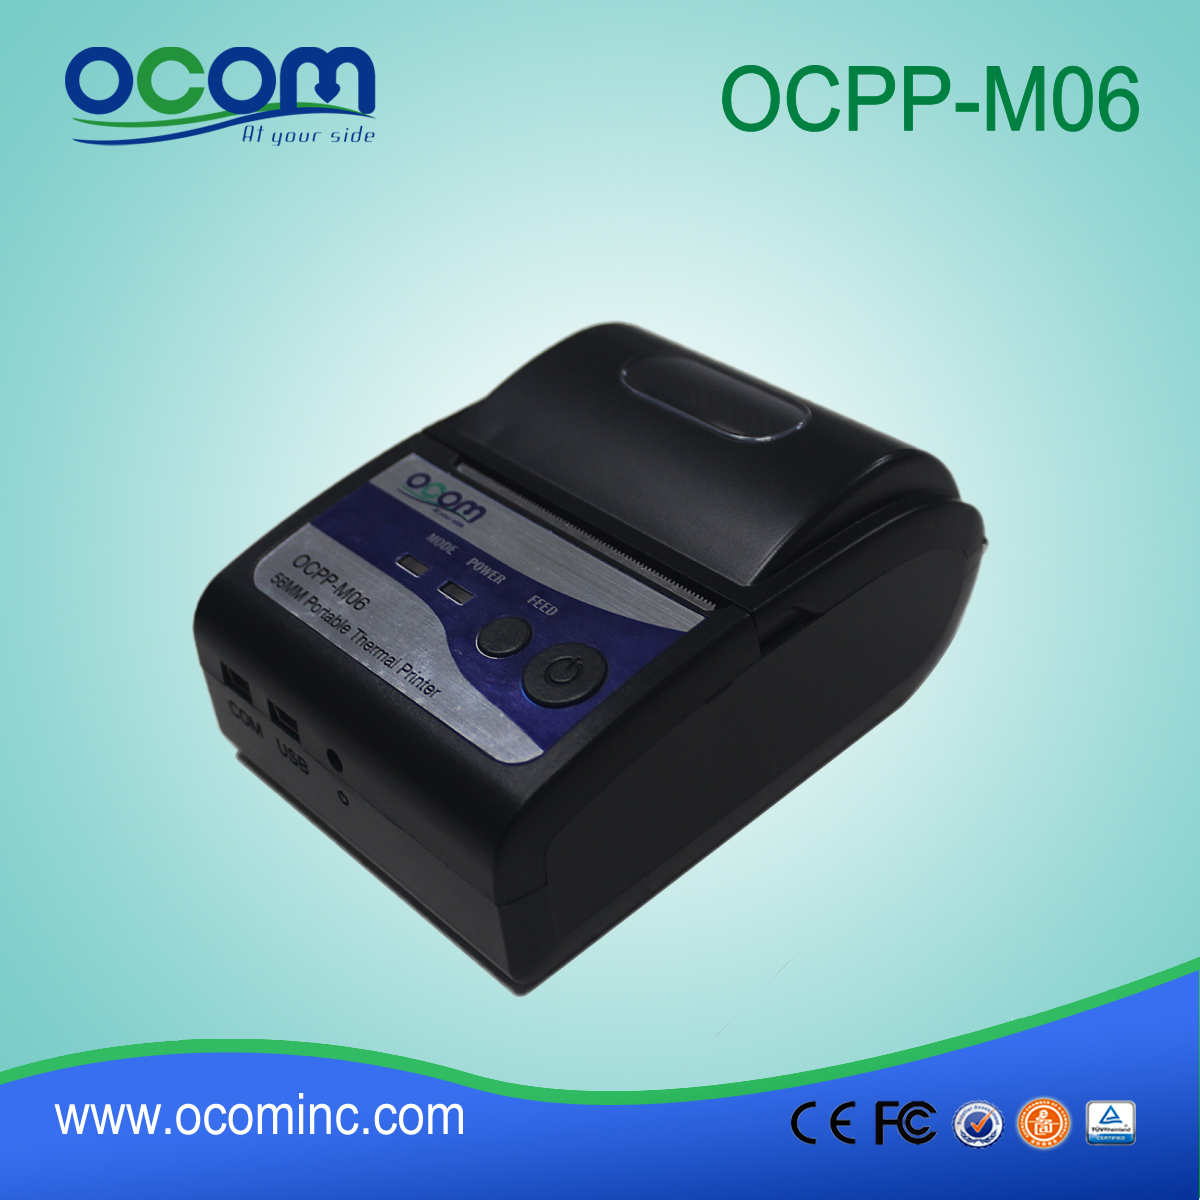 OCPP-M06: Fábrica-OCOM China vuelos 58 pos POS impresora